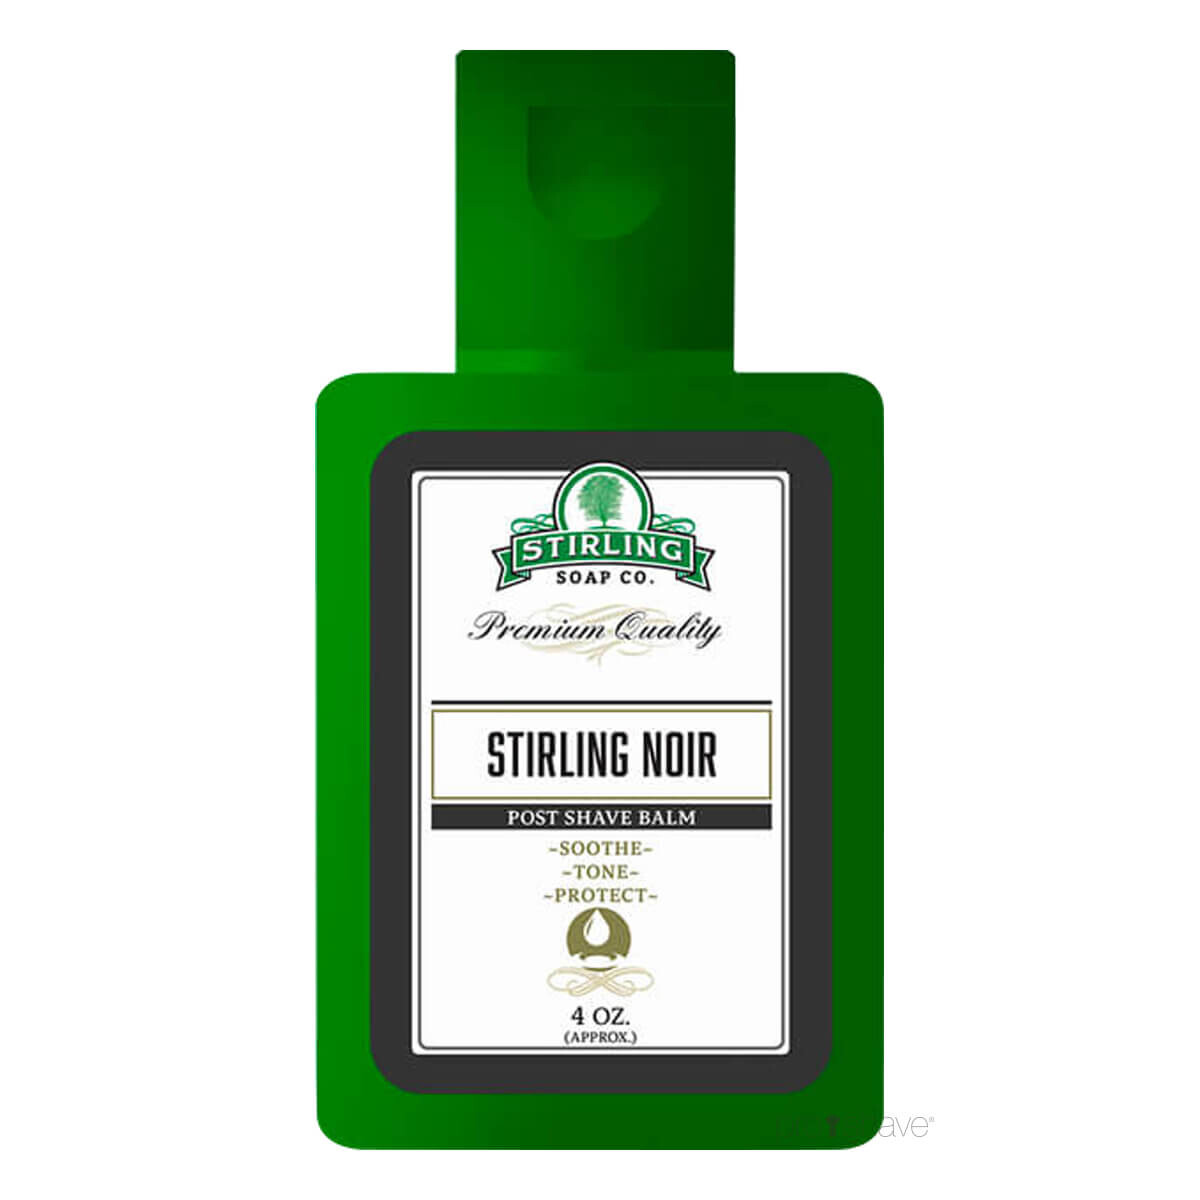 Stirling Soap Co. Aftershave Balm, Stirling Noir, 118 ml.